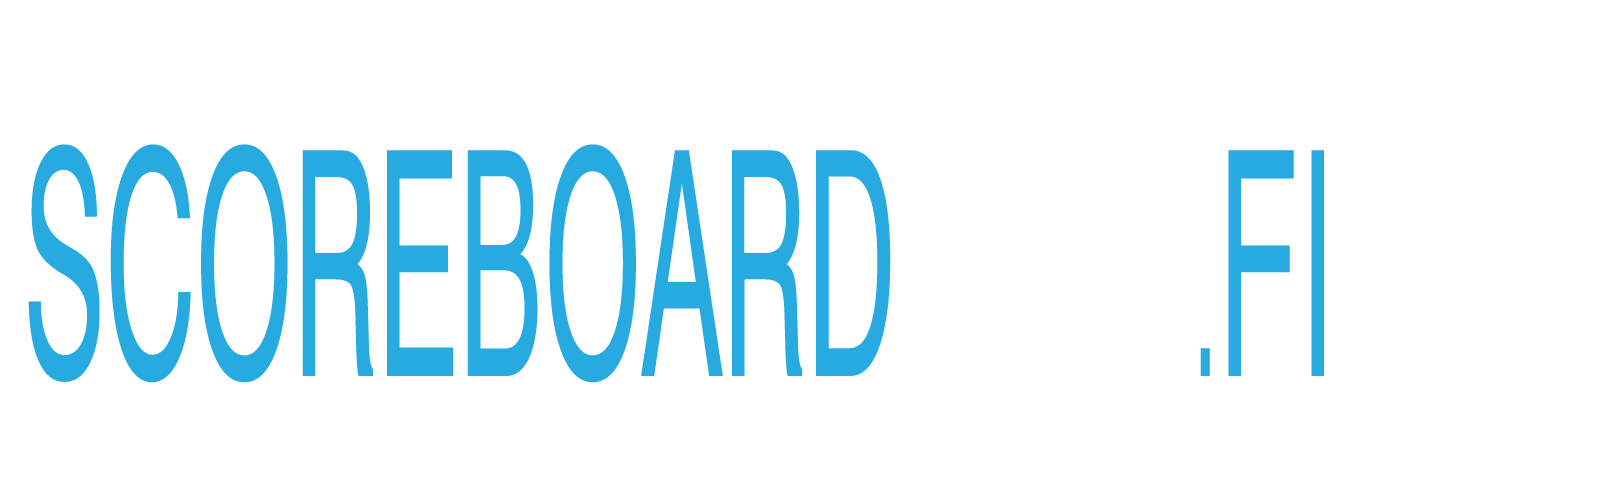 Scoreboard Live logo